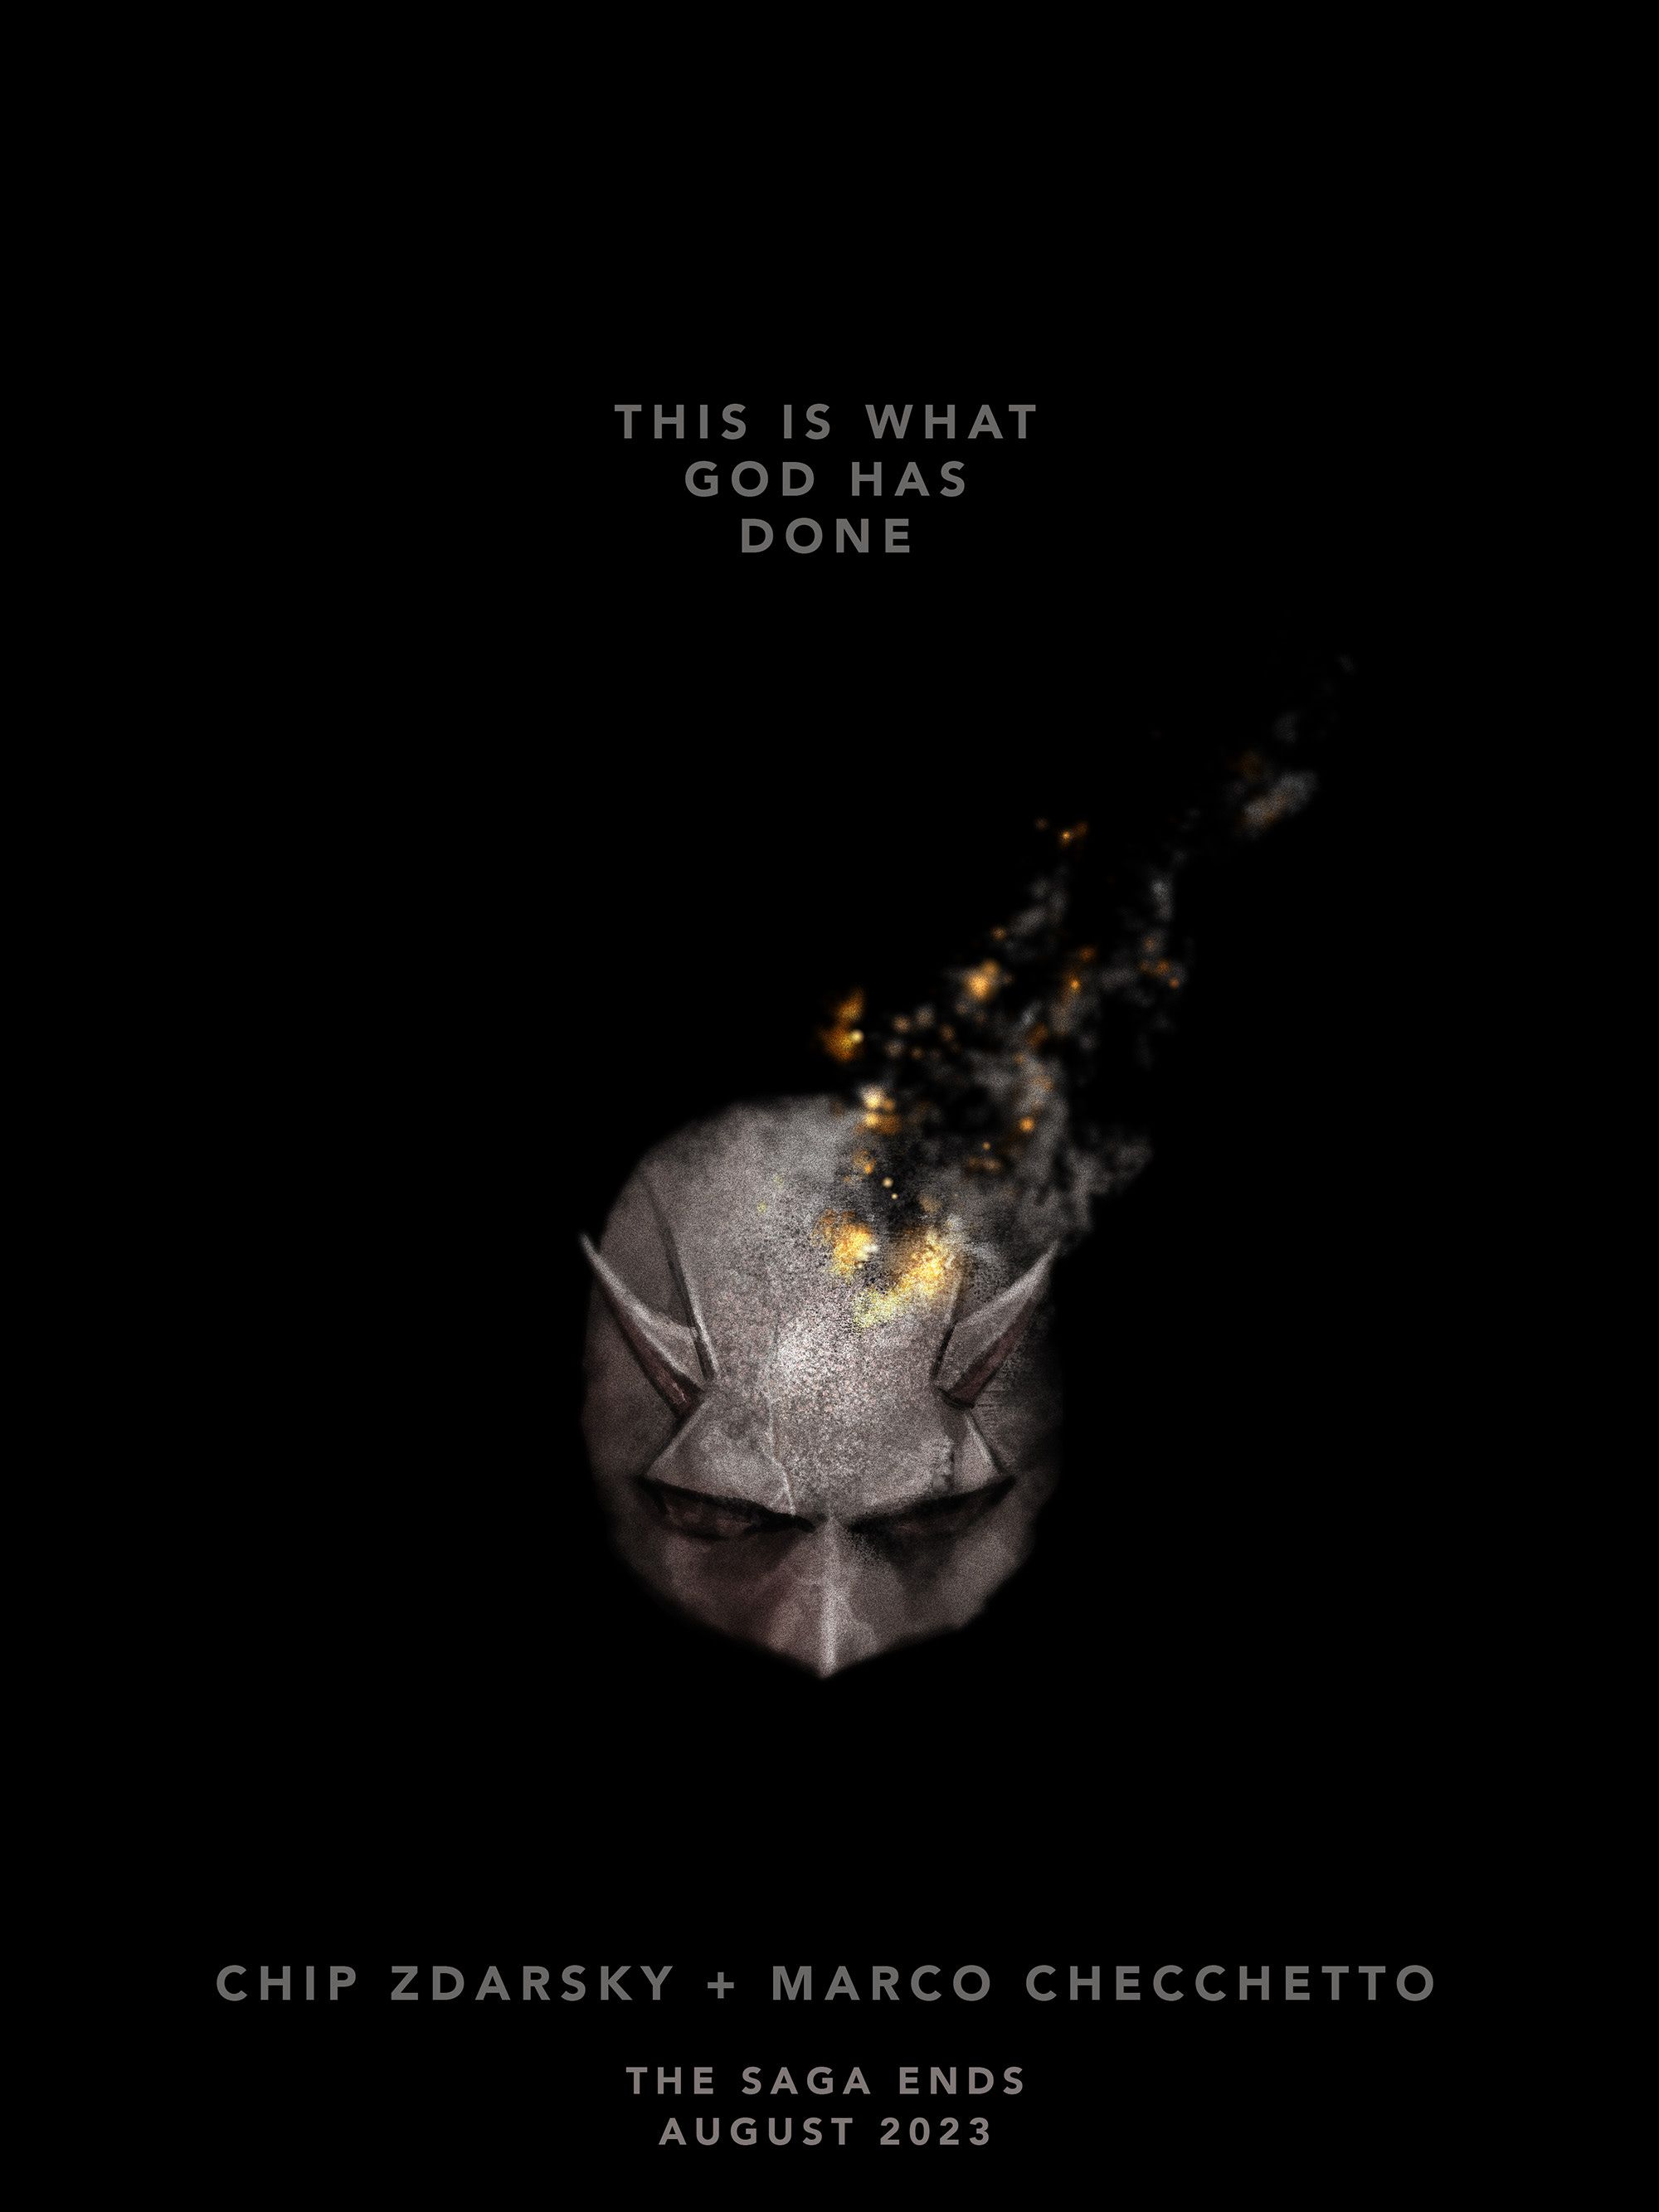 Uma promoção mostrando a máscara do Demolidor em chamas indica o fim da carreira do escritor Chip Zdarsky e do artista Marco Checchetto.